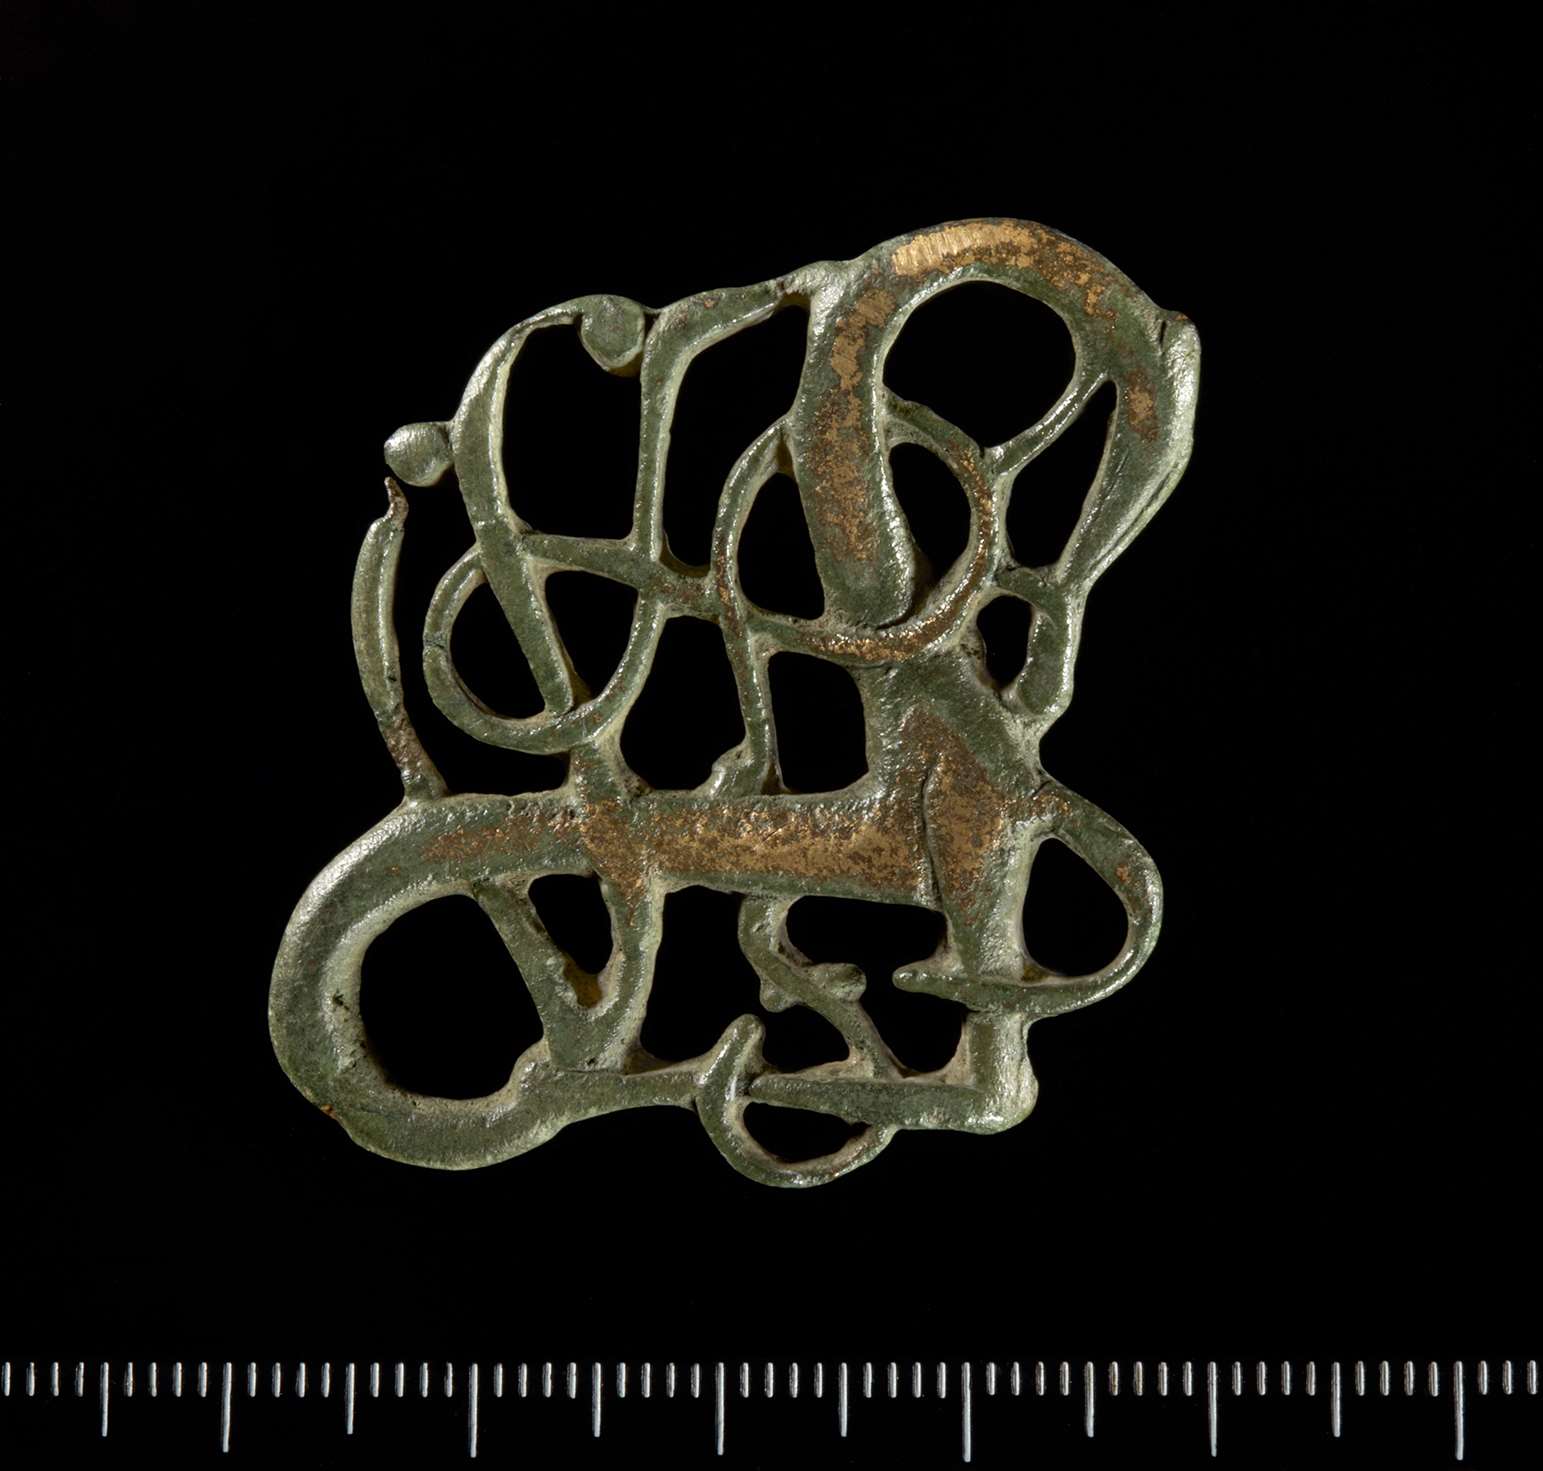 Urnesspenne fra middelalderen, funnet på østre Jong.